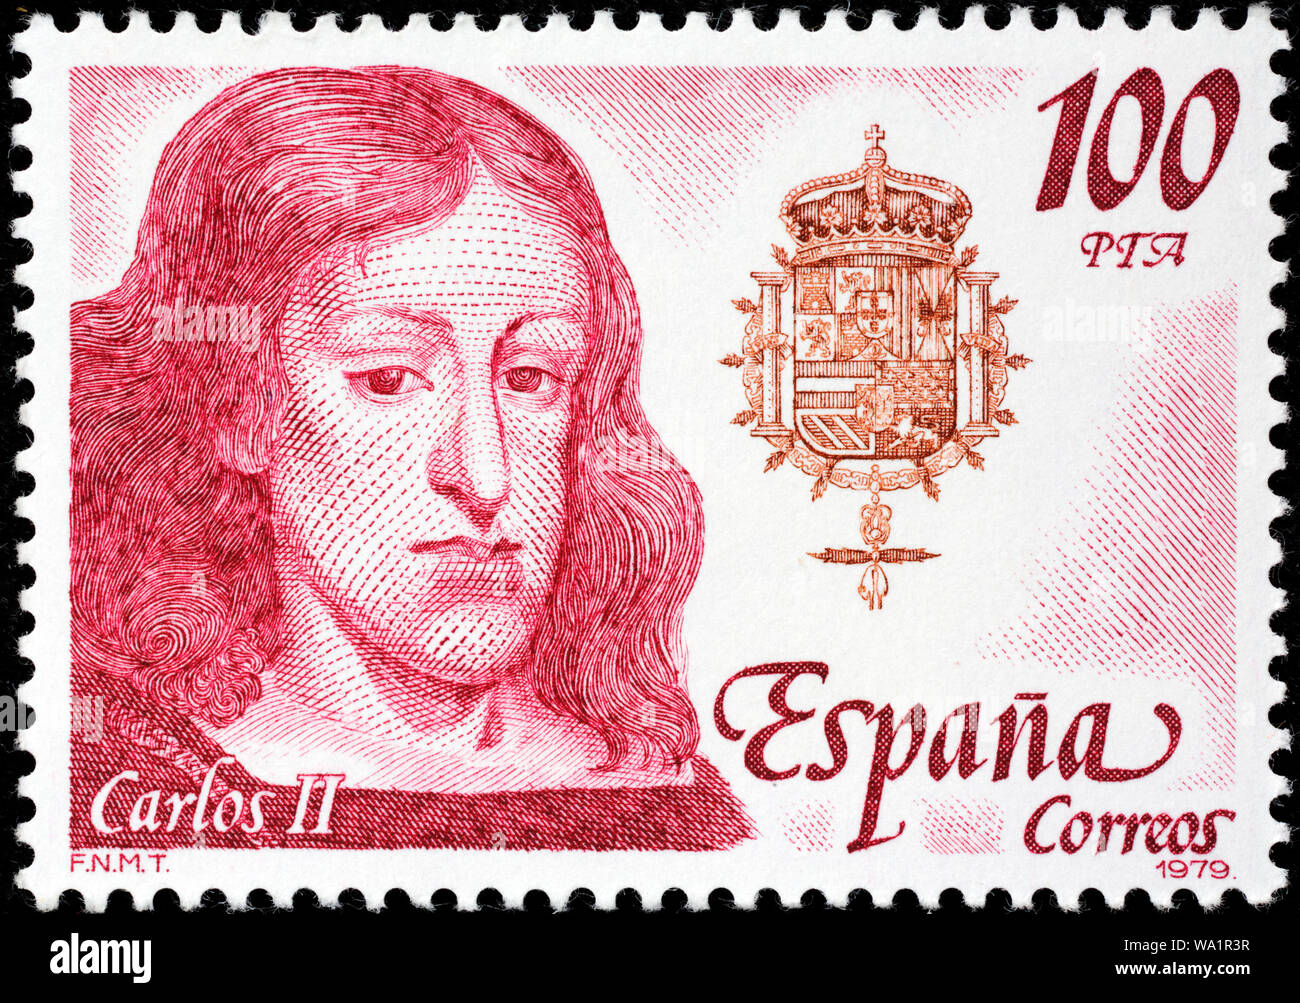 Charles II (1661-1700), King of Spain, Habsburg, postage stamp, Spain, 1979 Stock Photo